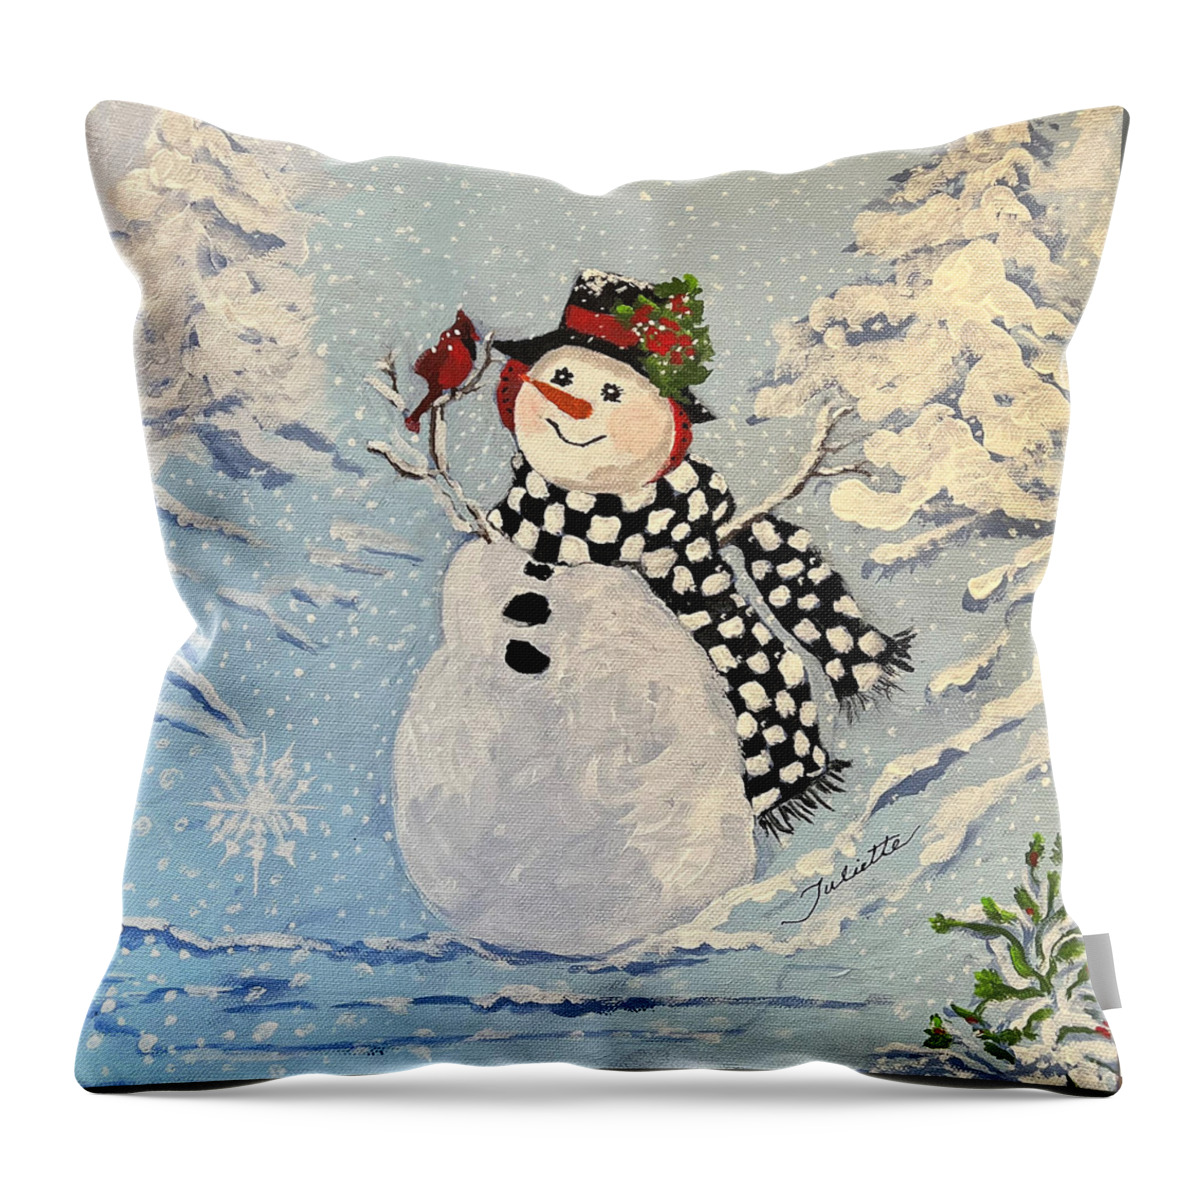 Snowman Throw Pillow featuring the painting Winter Wonderland by Juliette Becker